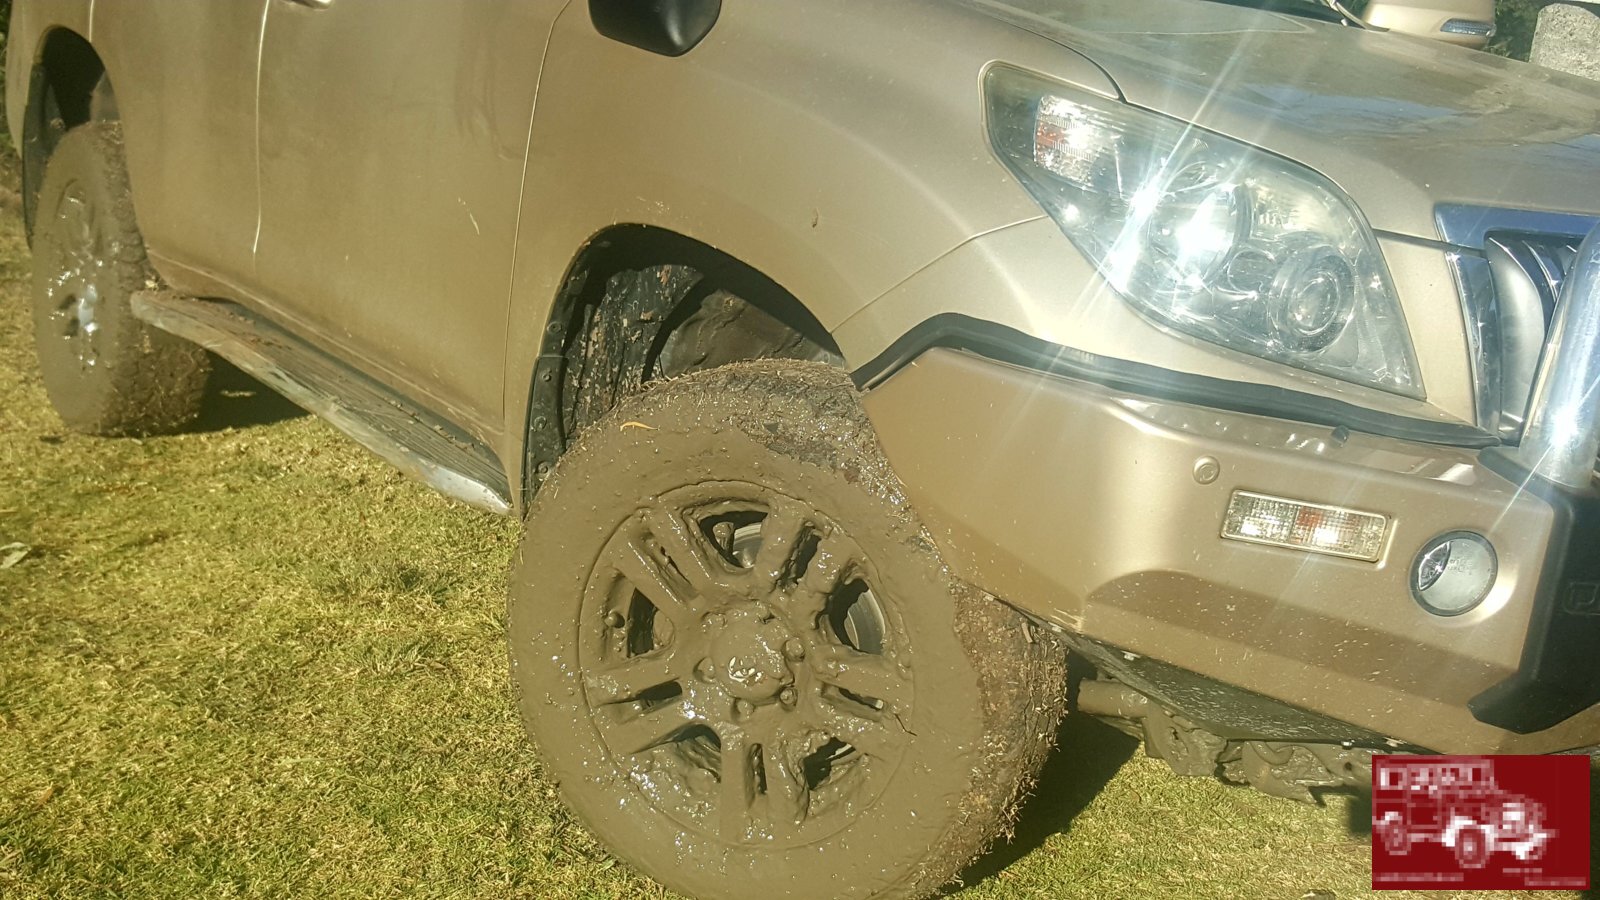 Thick mud